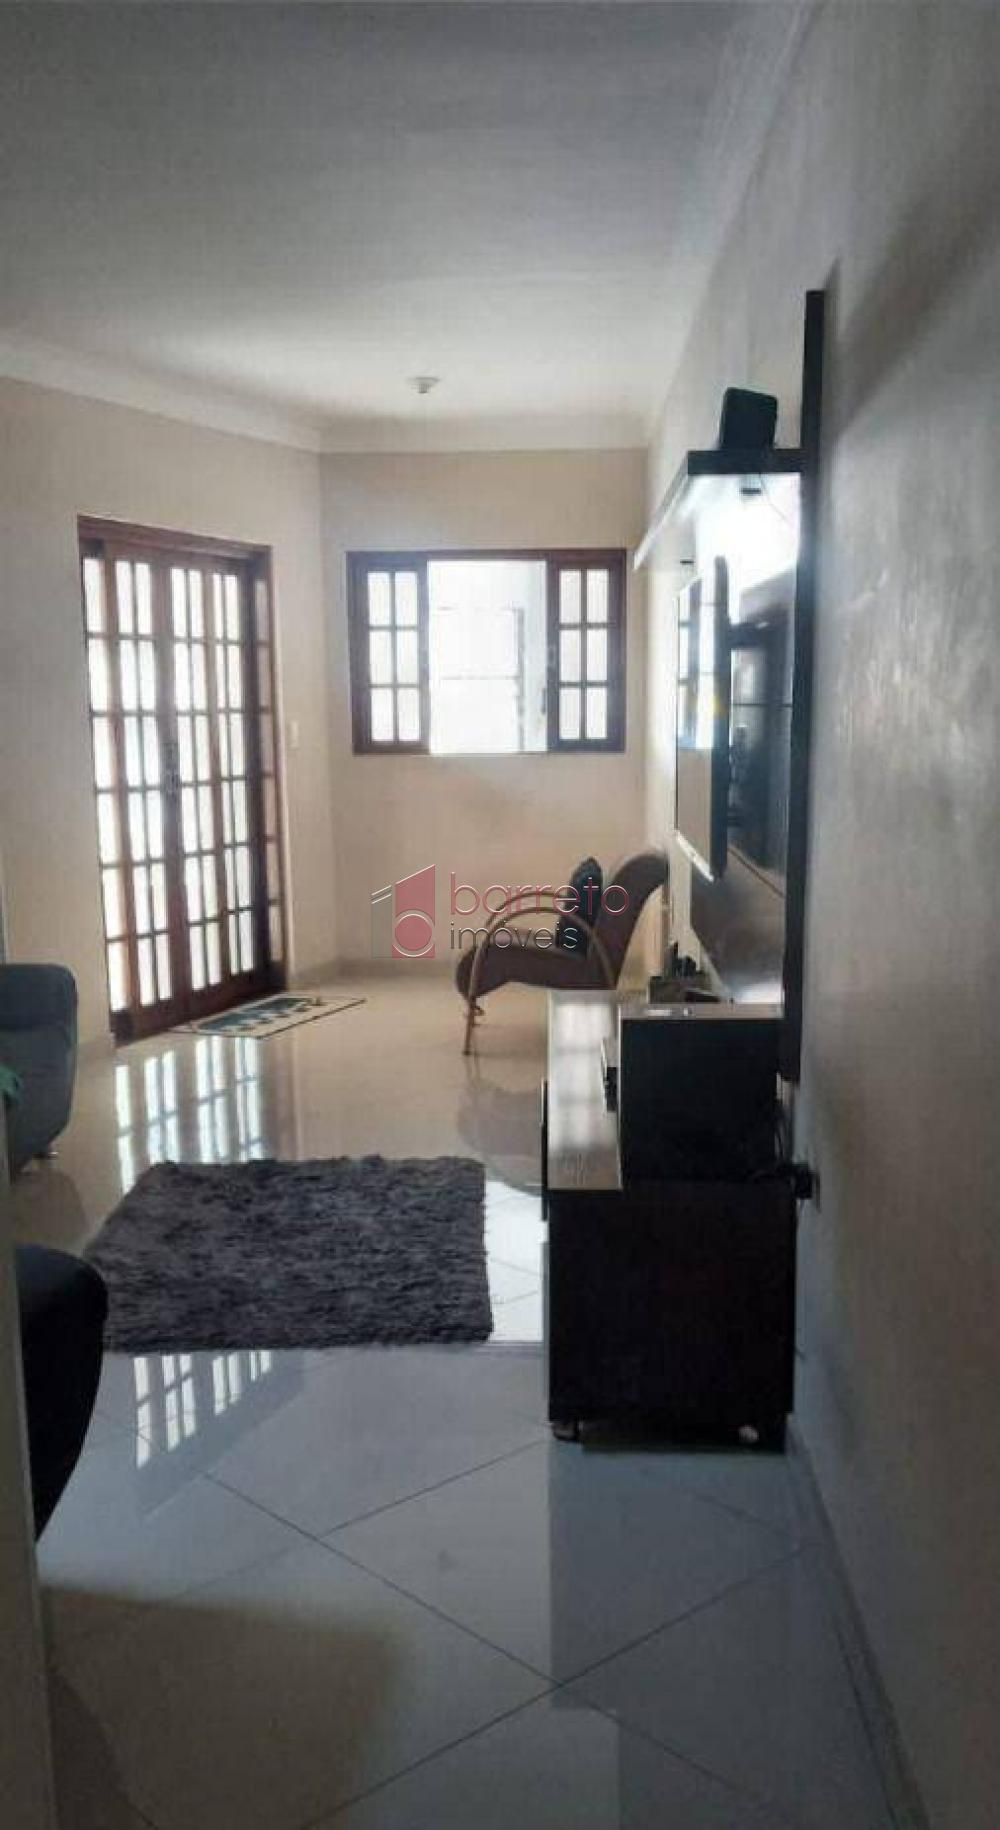 Comprar Casa / Padrão em Jundiaí R$ 430.000,00 - Foto 11